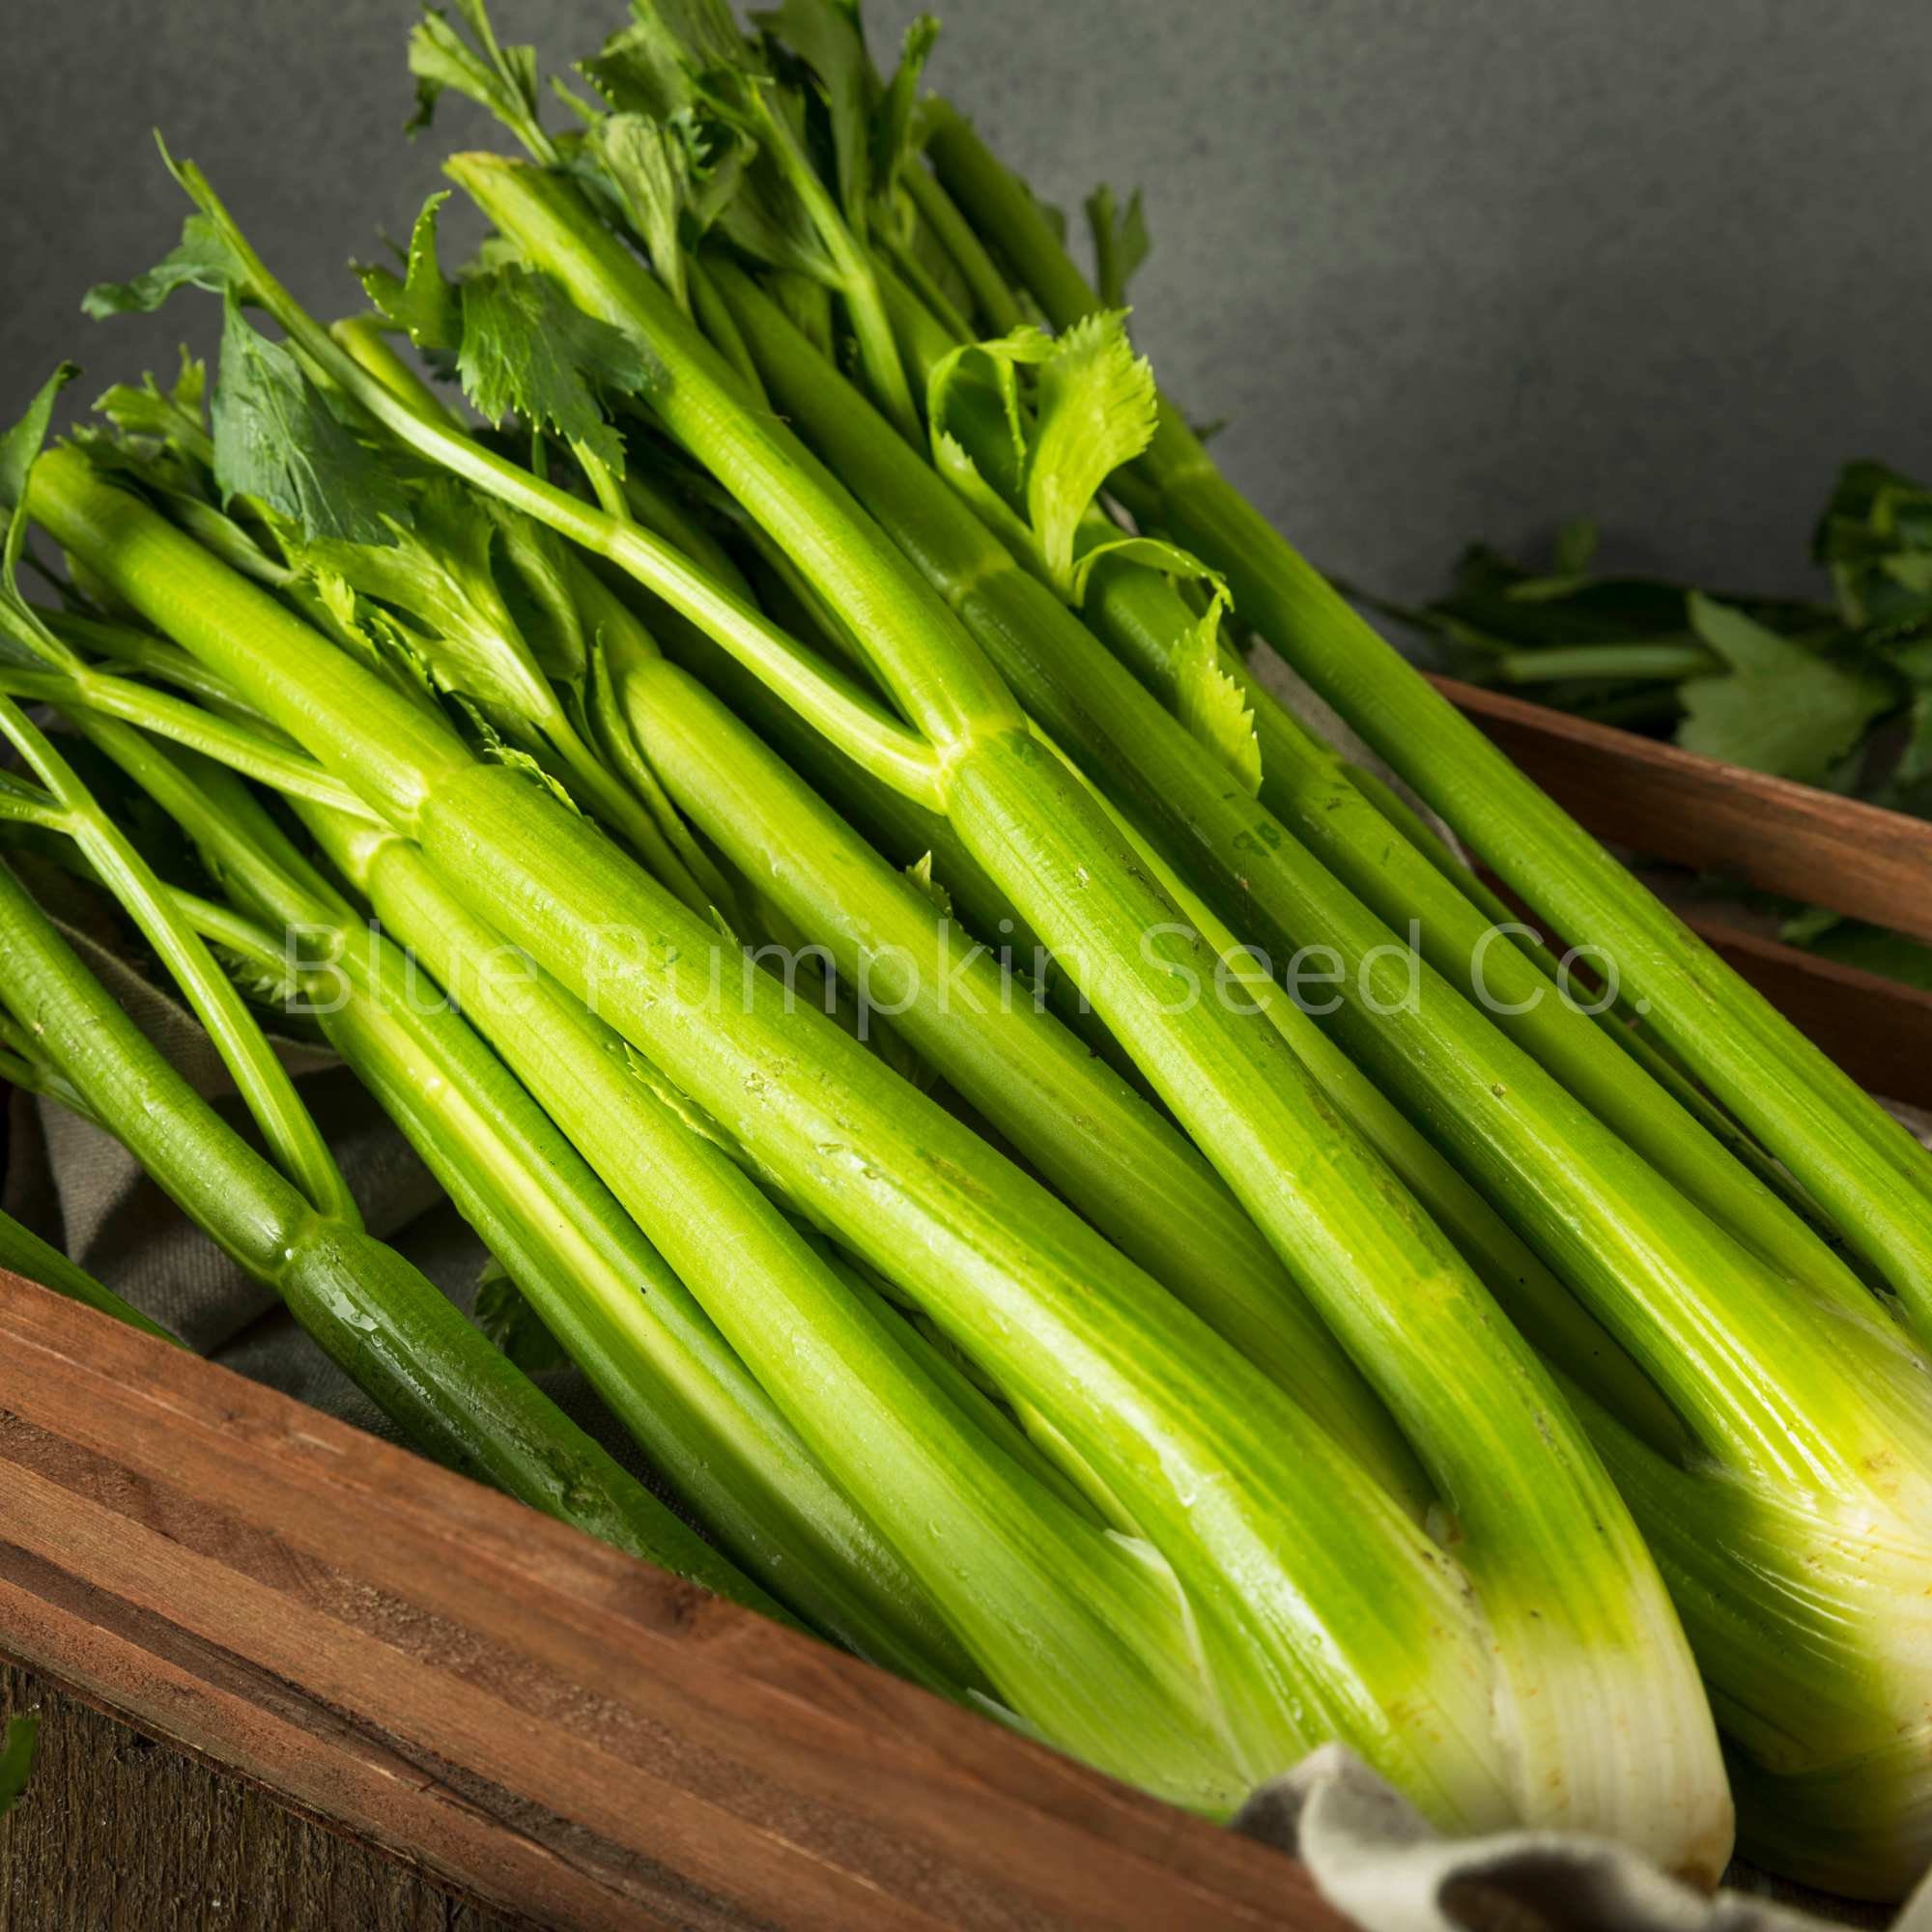 home made celery dildos